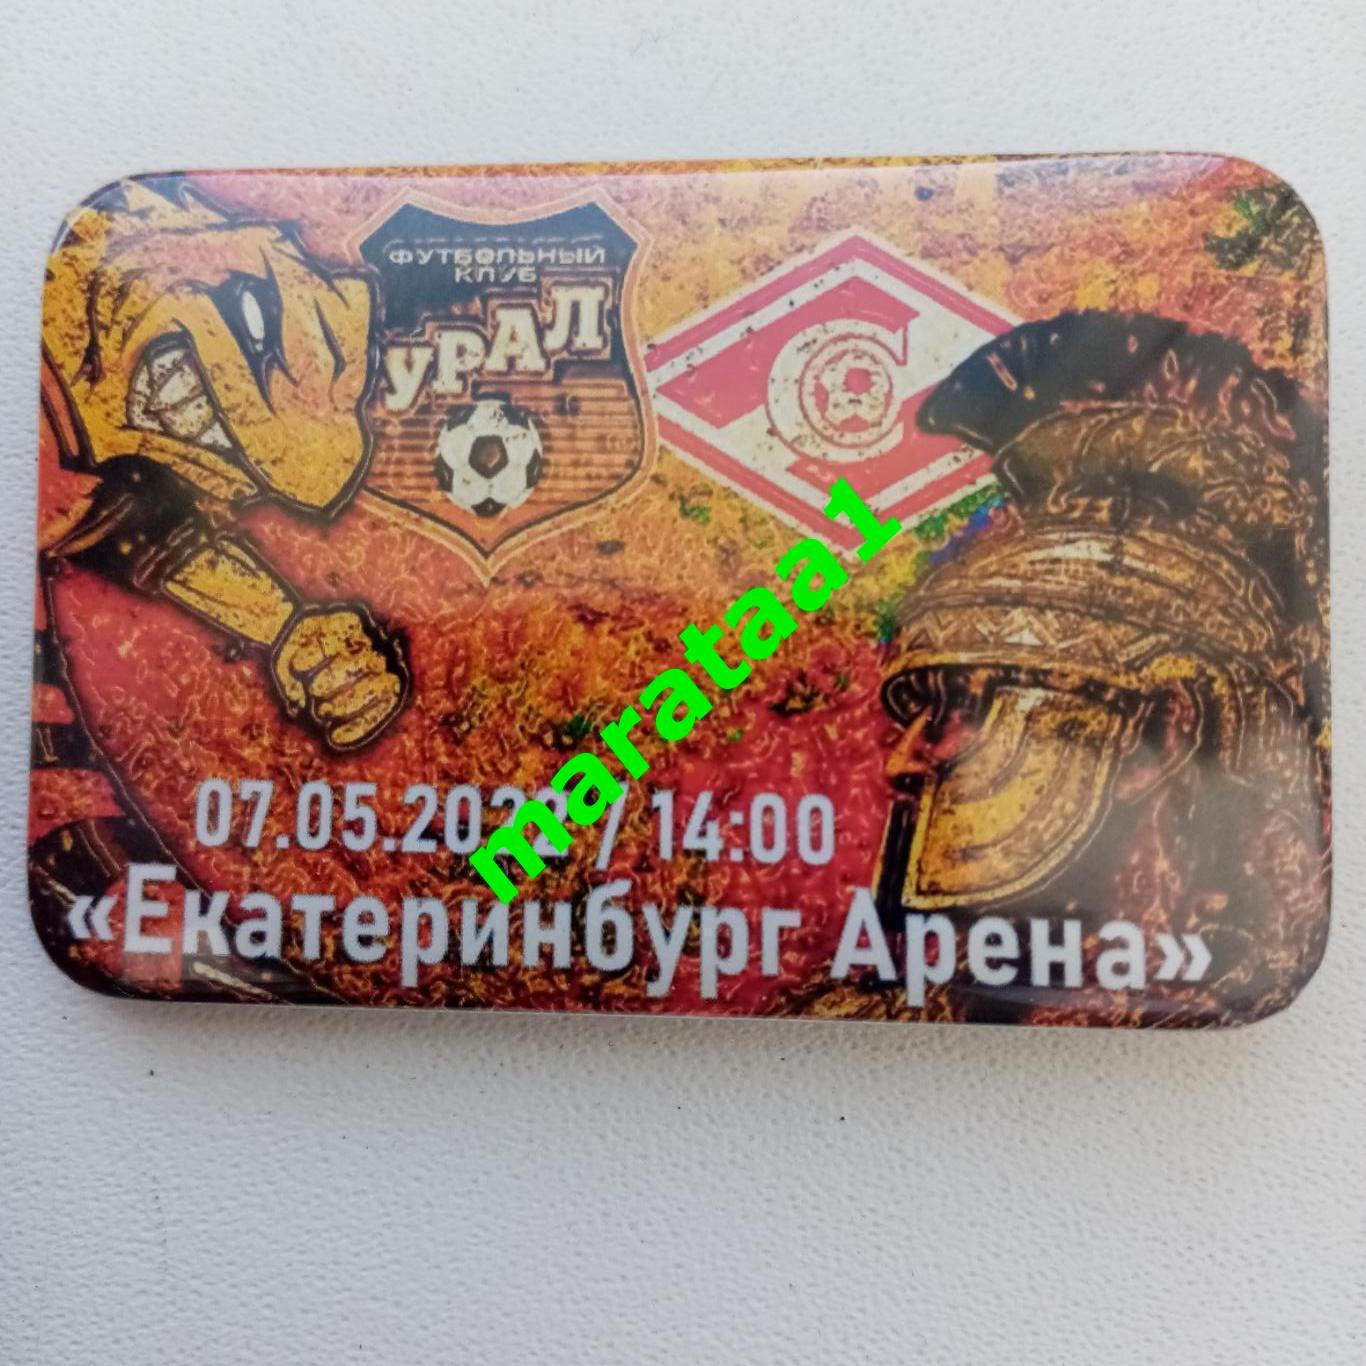 Урал Екатеринбург - Спартак Москва 07.05.2022